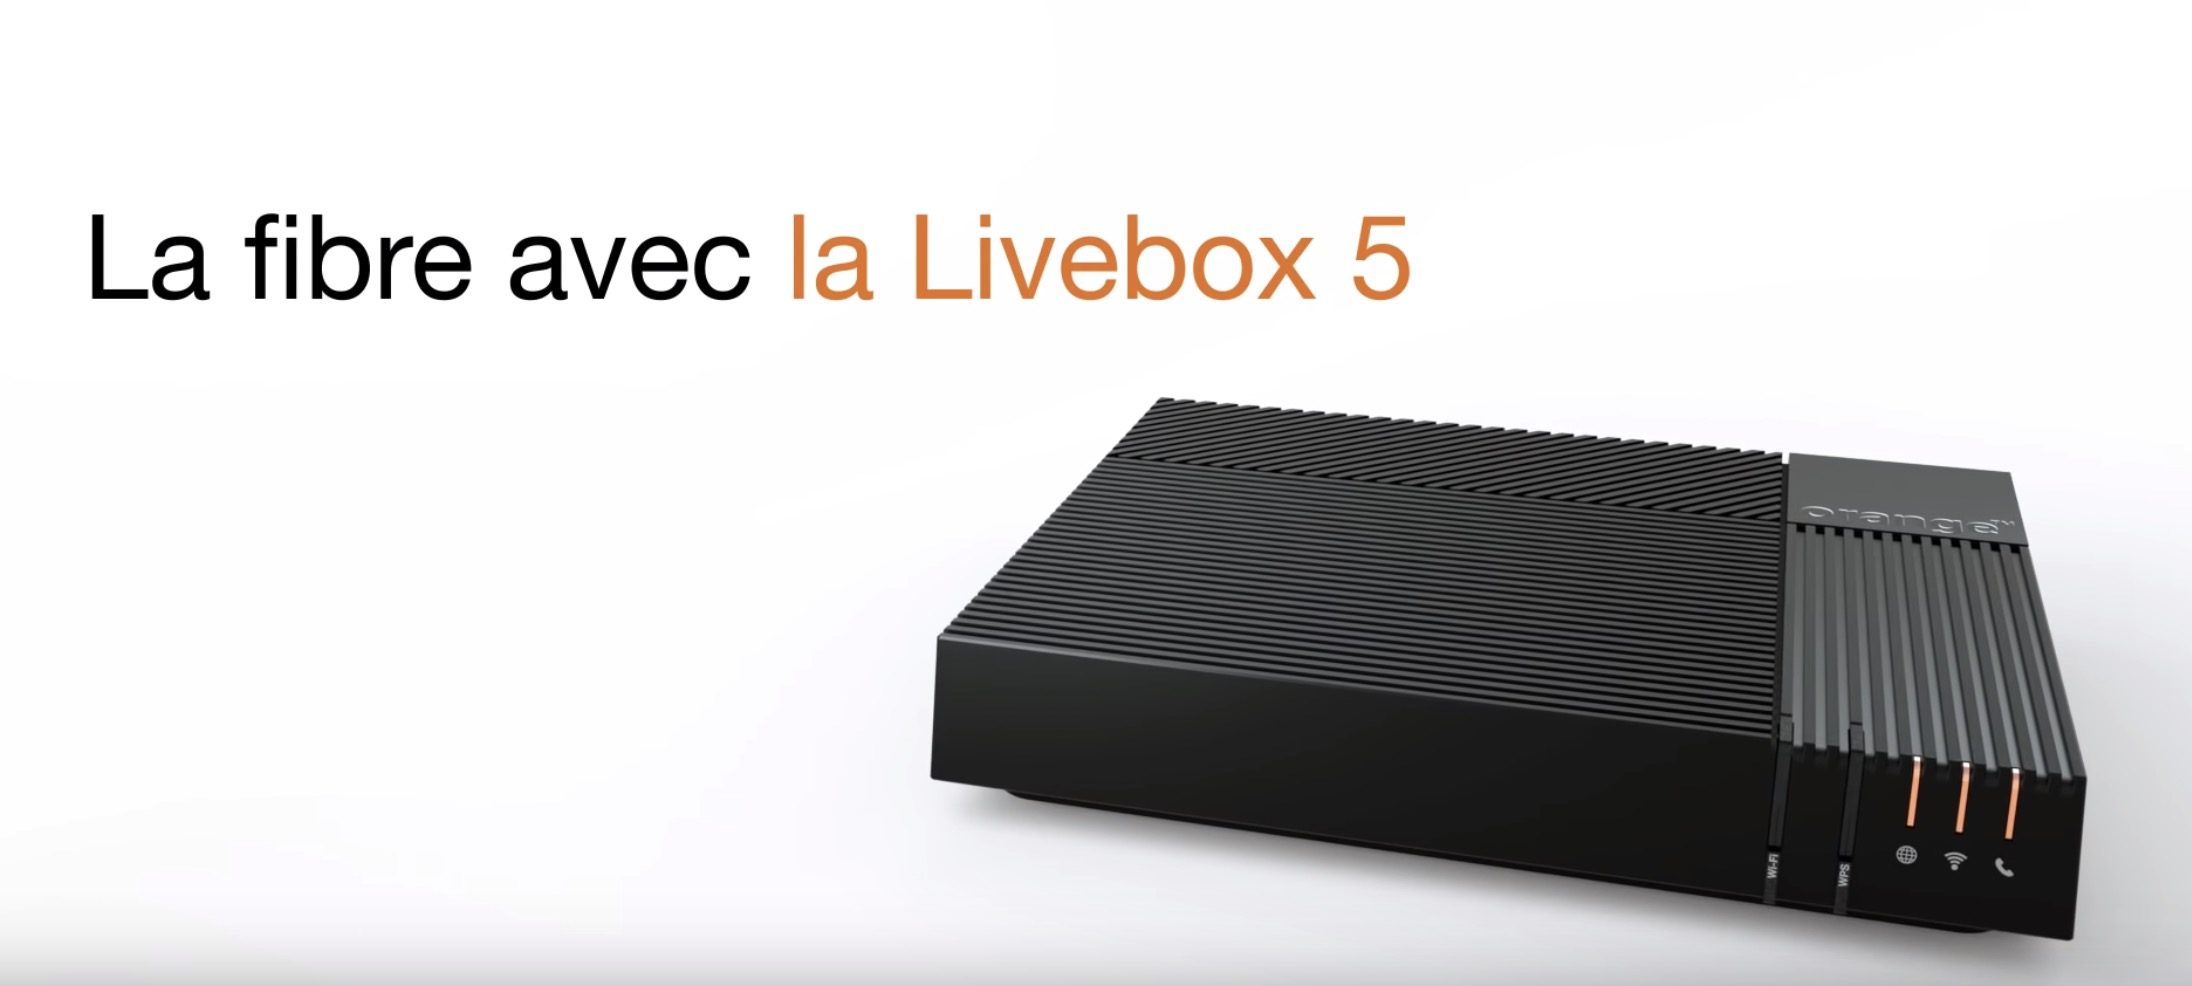 Découverte de la Livebox 5 d’Orange : voici toutes les nouveautés et caractéristiques